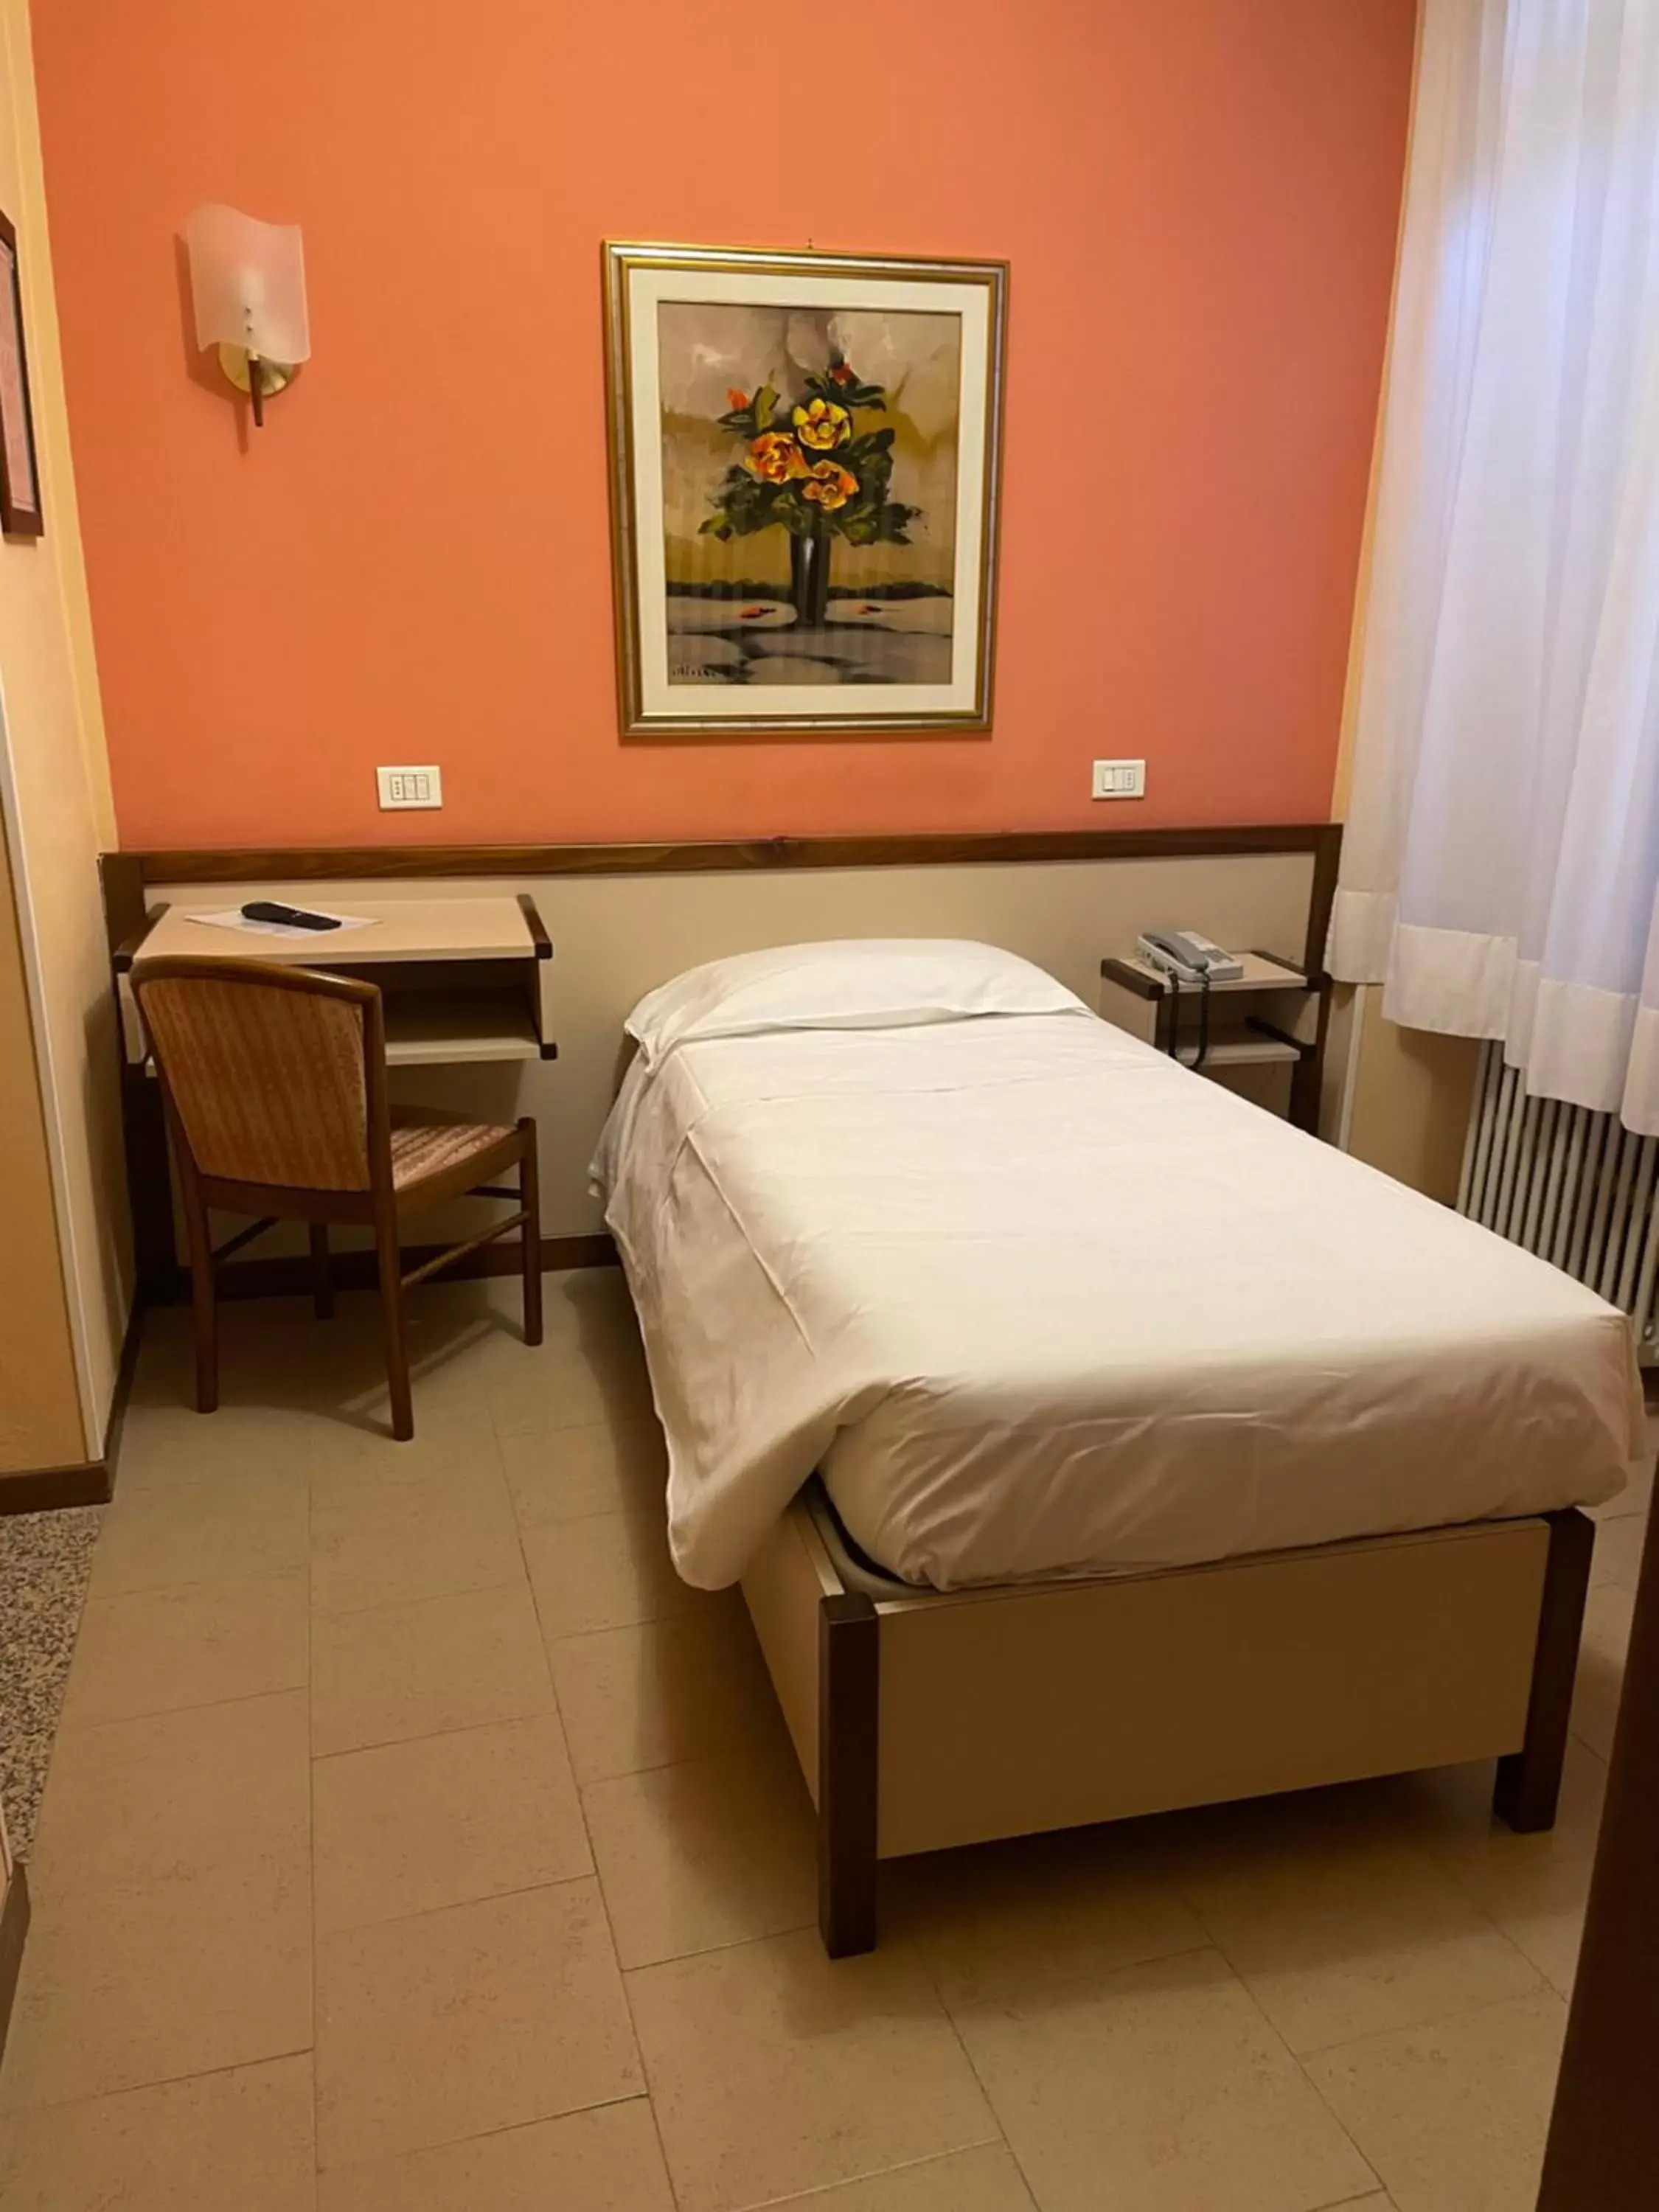 Bed in Bes Hotel Papa San Pellegrino Terme